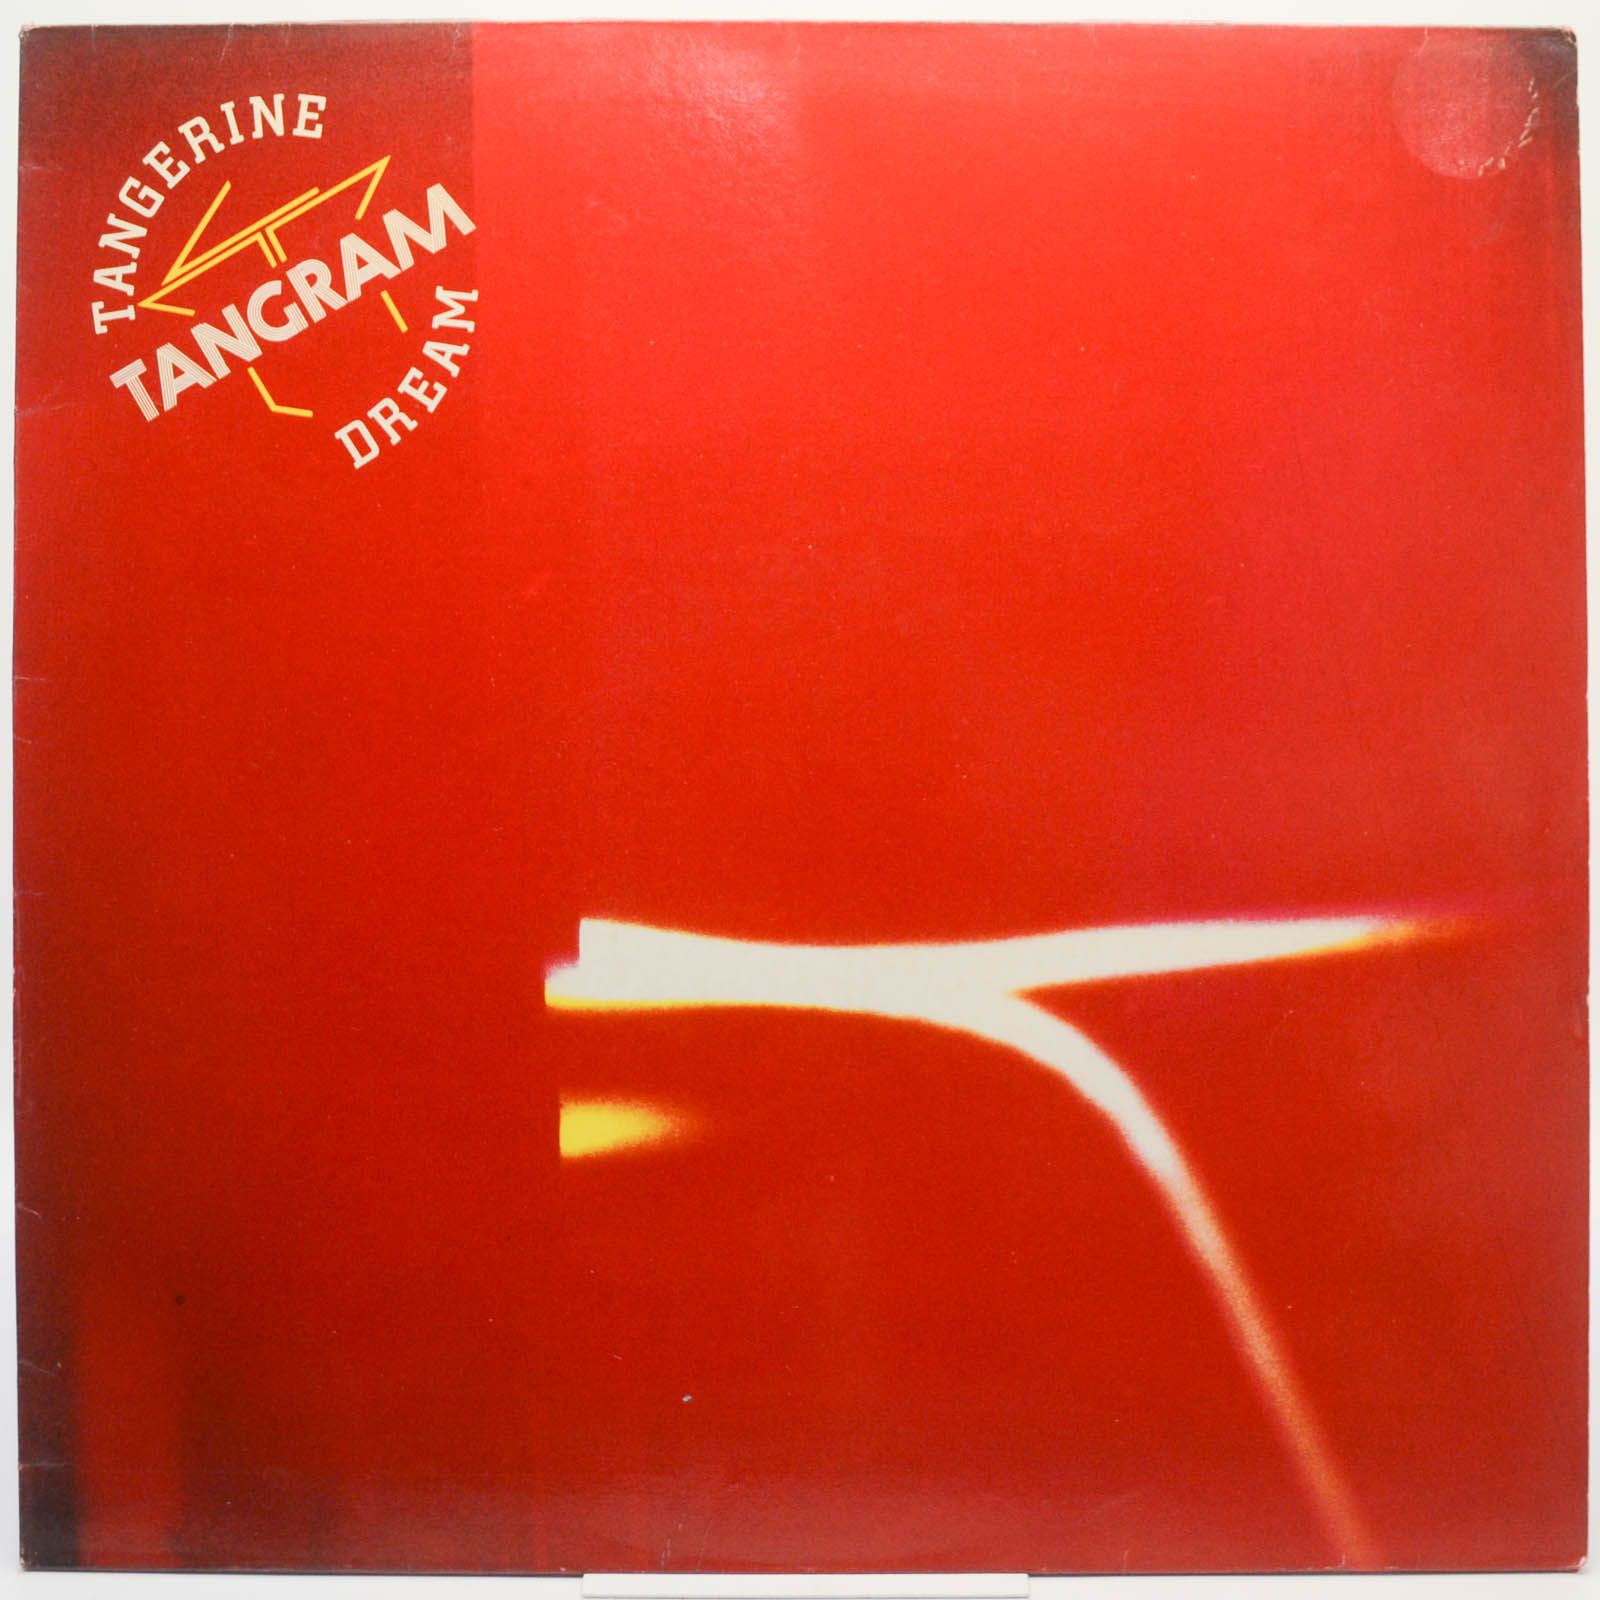 Tangerine Dream — Tangram, 1980